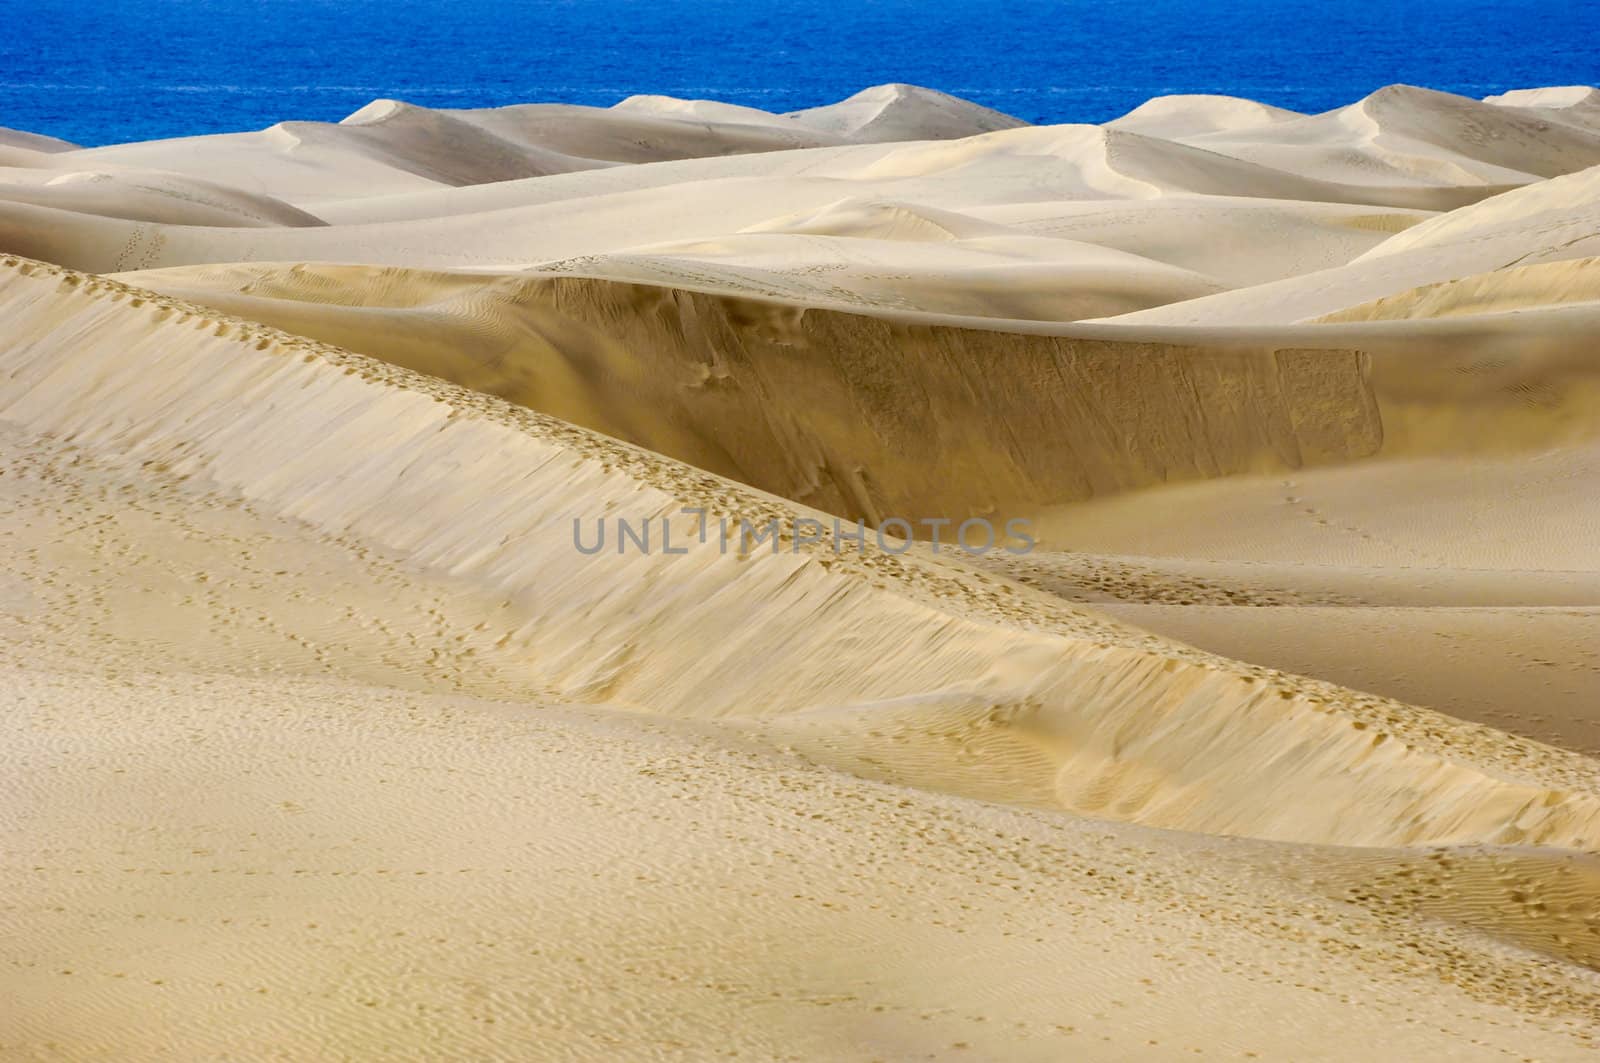 Landscape with sand duns